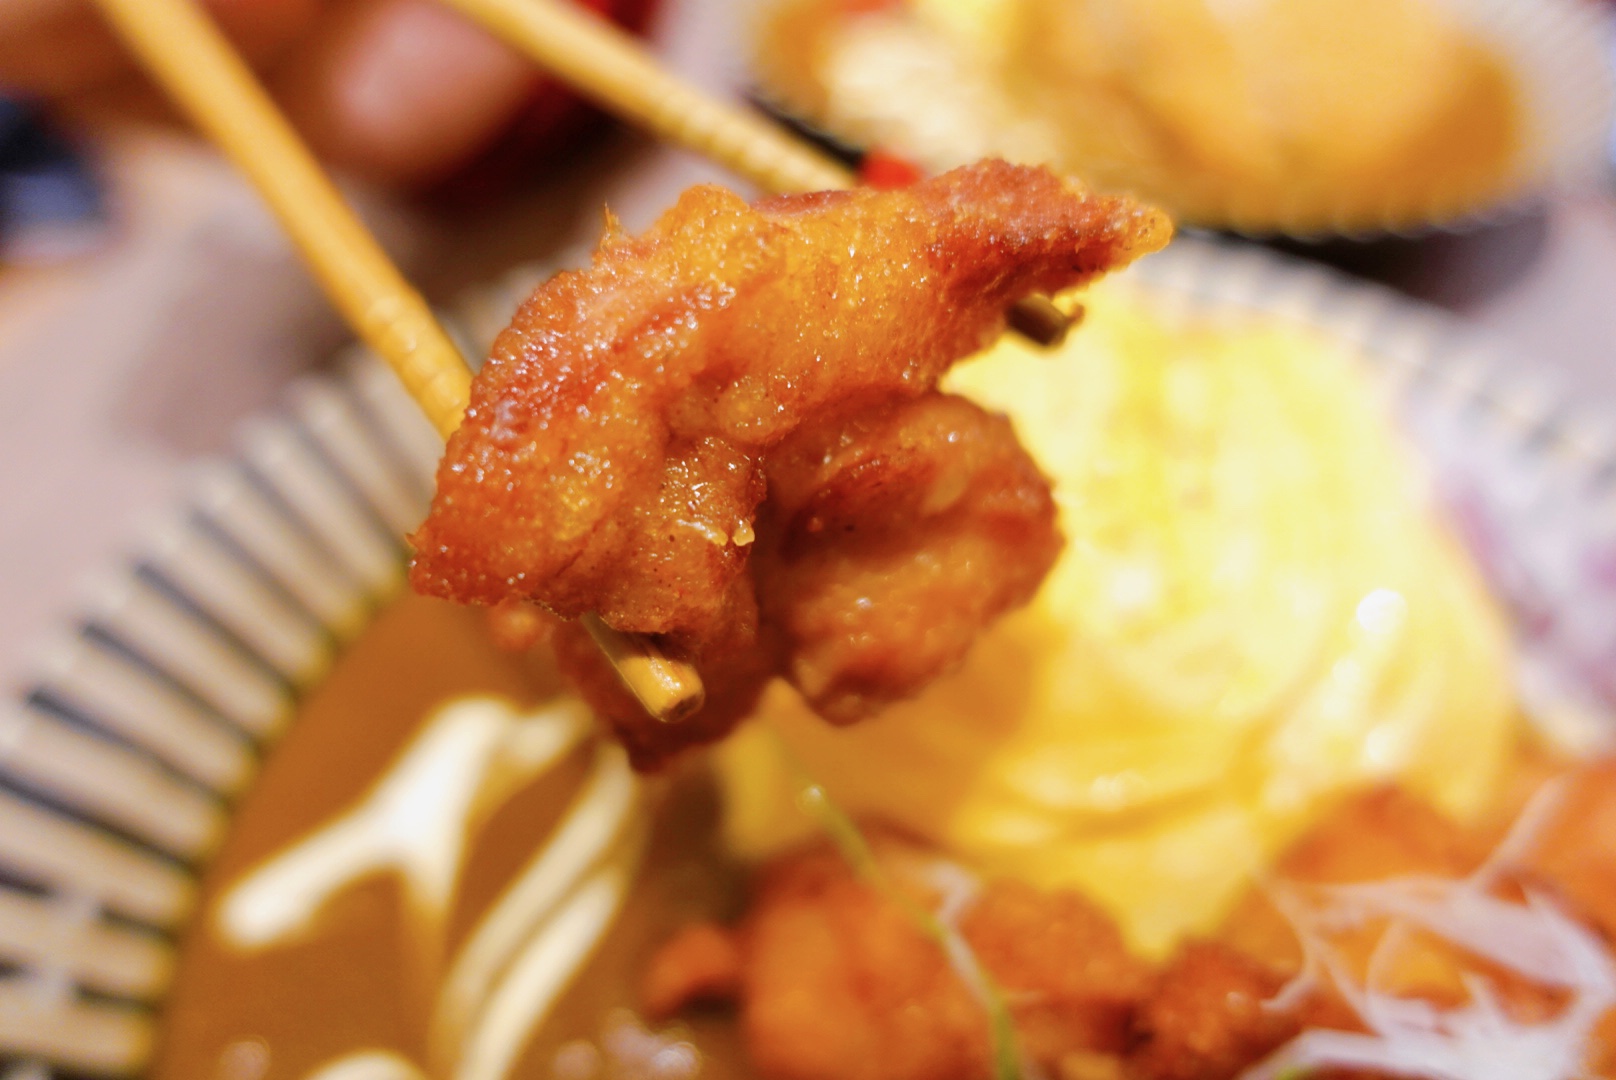 《忠孝復興美食》CURRY MADE 咖哩製作所，200元就能吃到歐姆蛋咖哩，令人驚豔的日式咖哩新店家(菜單) @神農太太底家